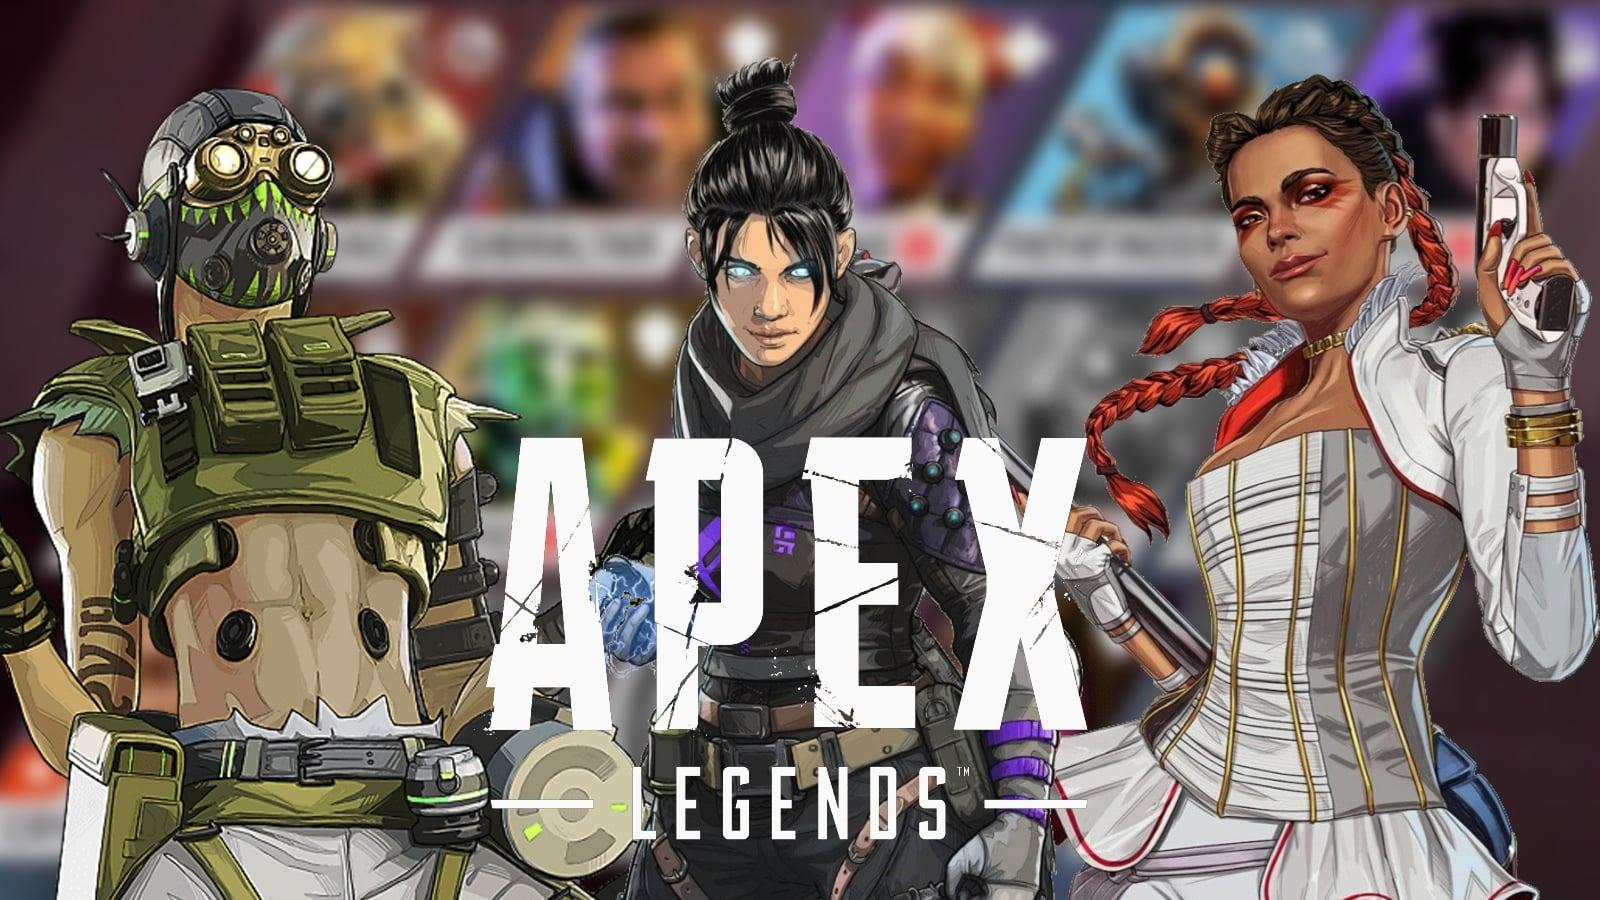 Pick rate in Apex Legends